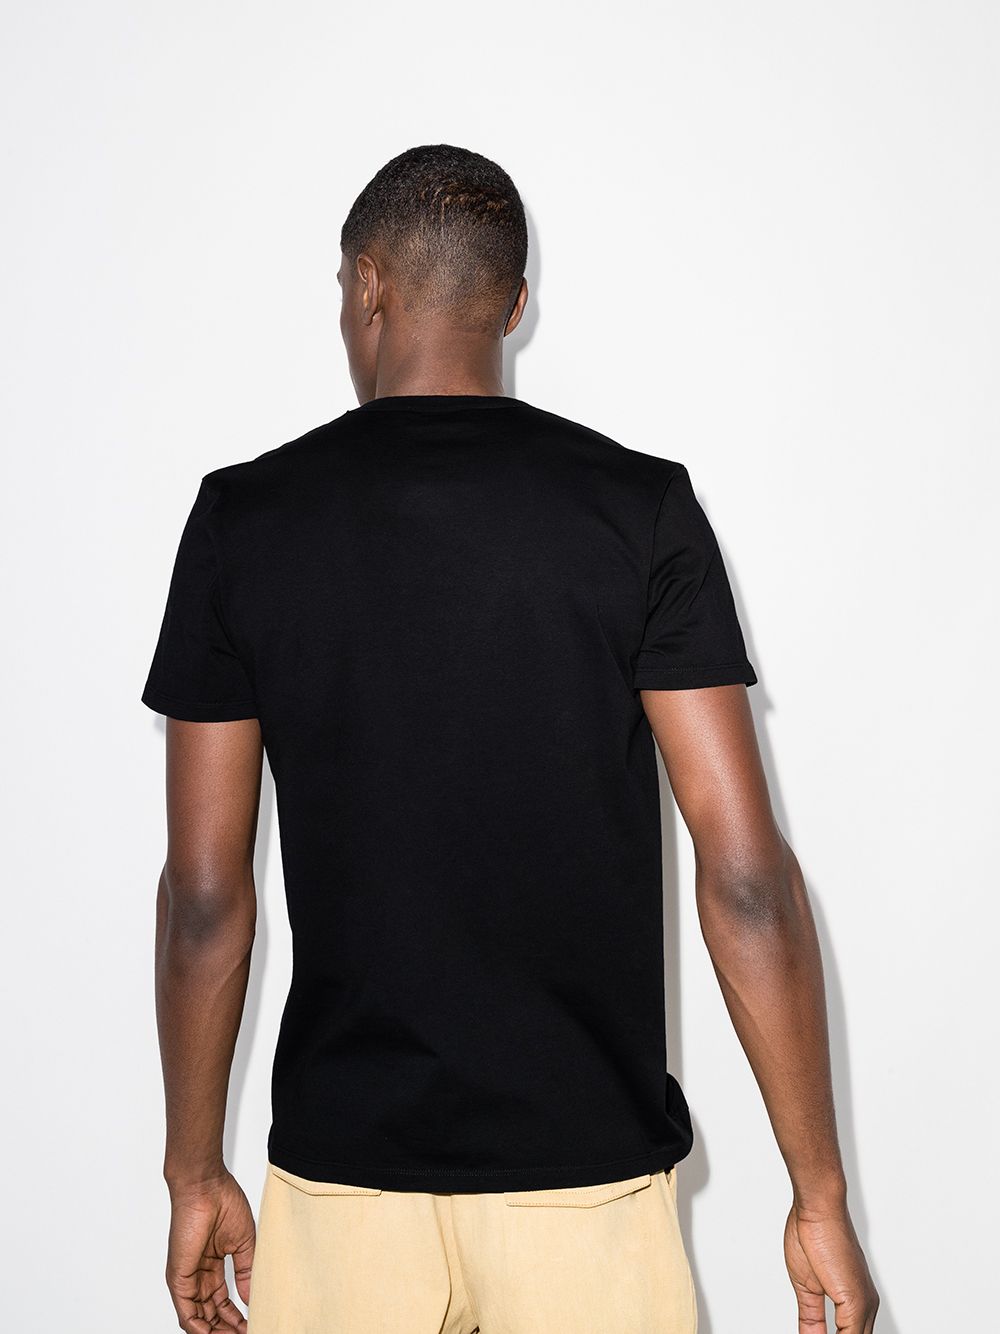 Maison Kitsuné - T-shirt black Fox - Lothaire